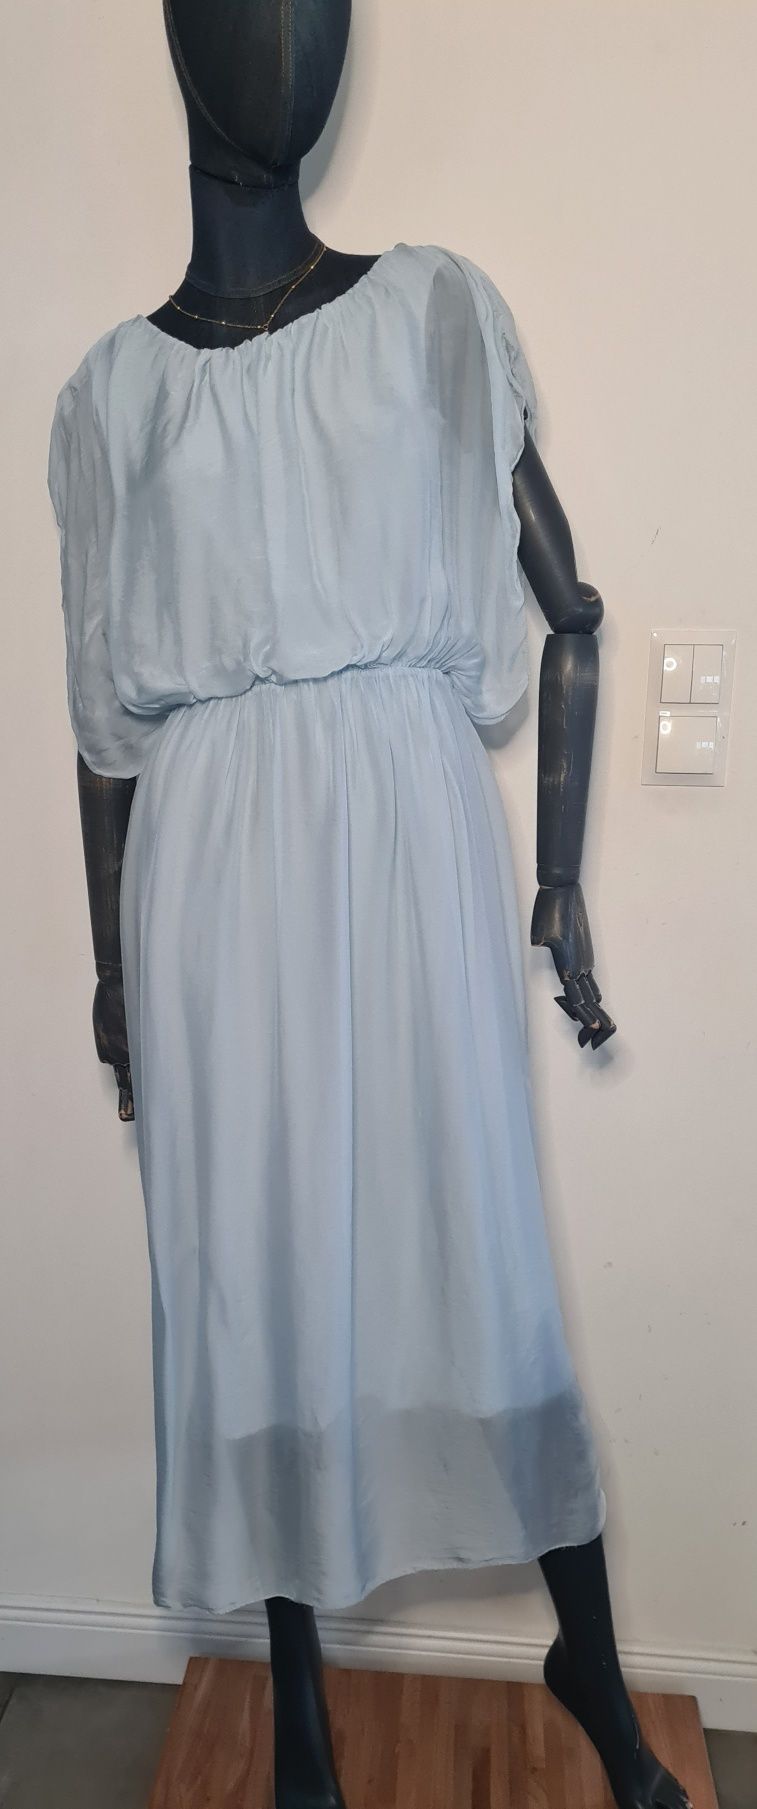 Błękitna sukienka w stylu greckim. 30% Jedwab i 70% Wiskoza. L / XL